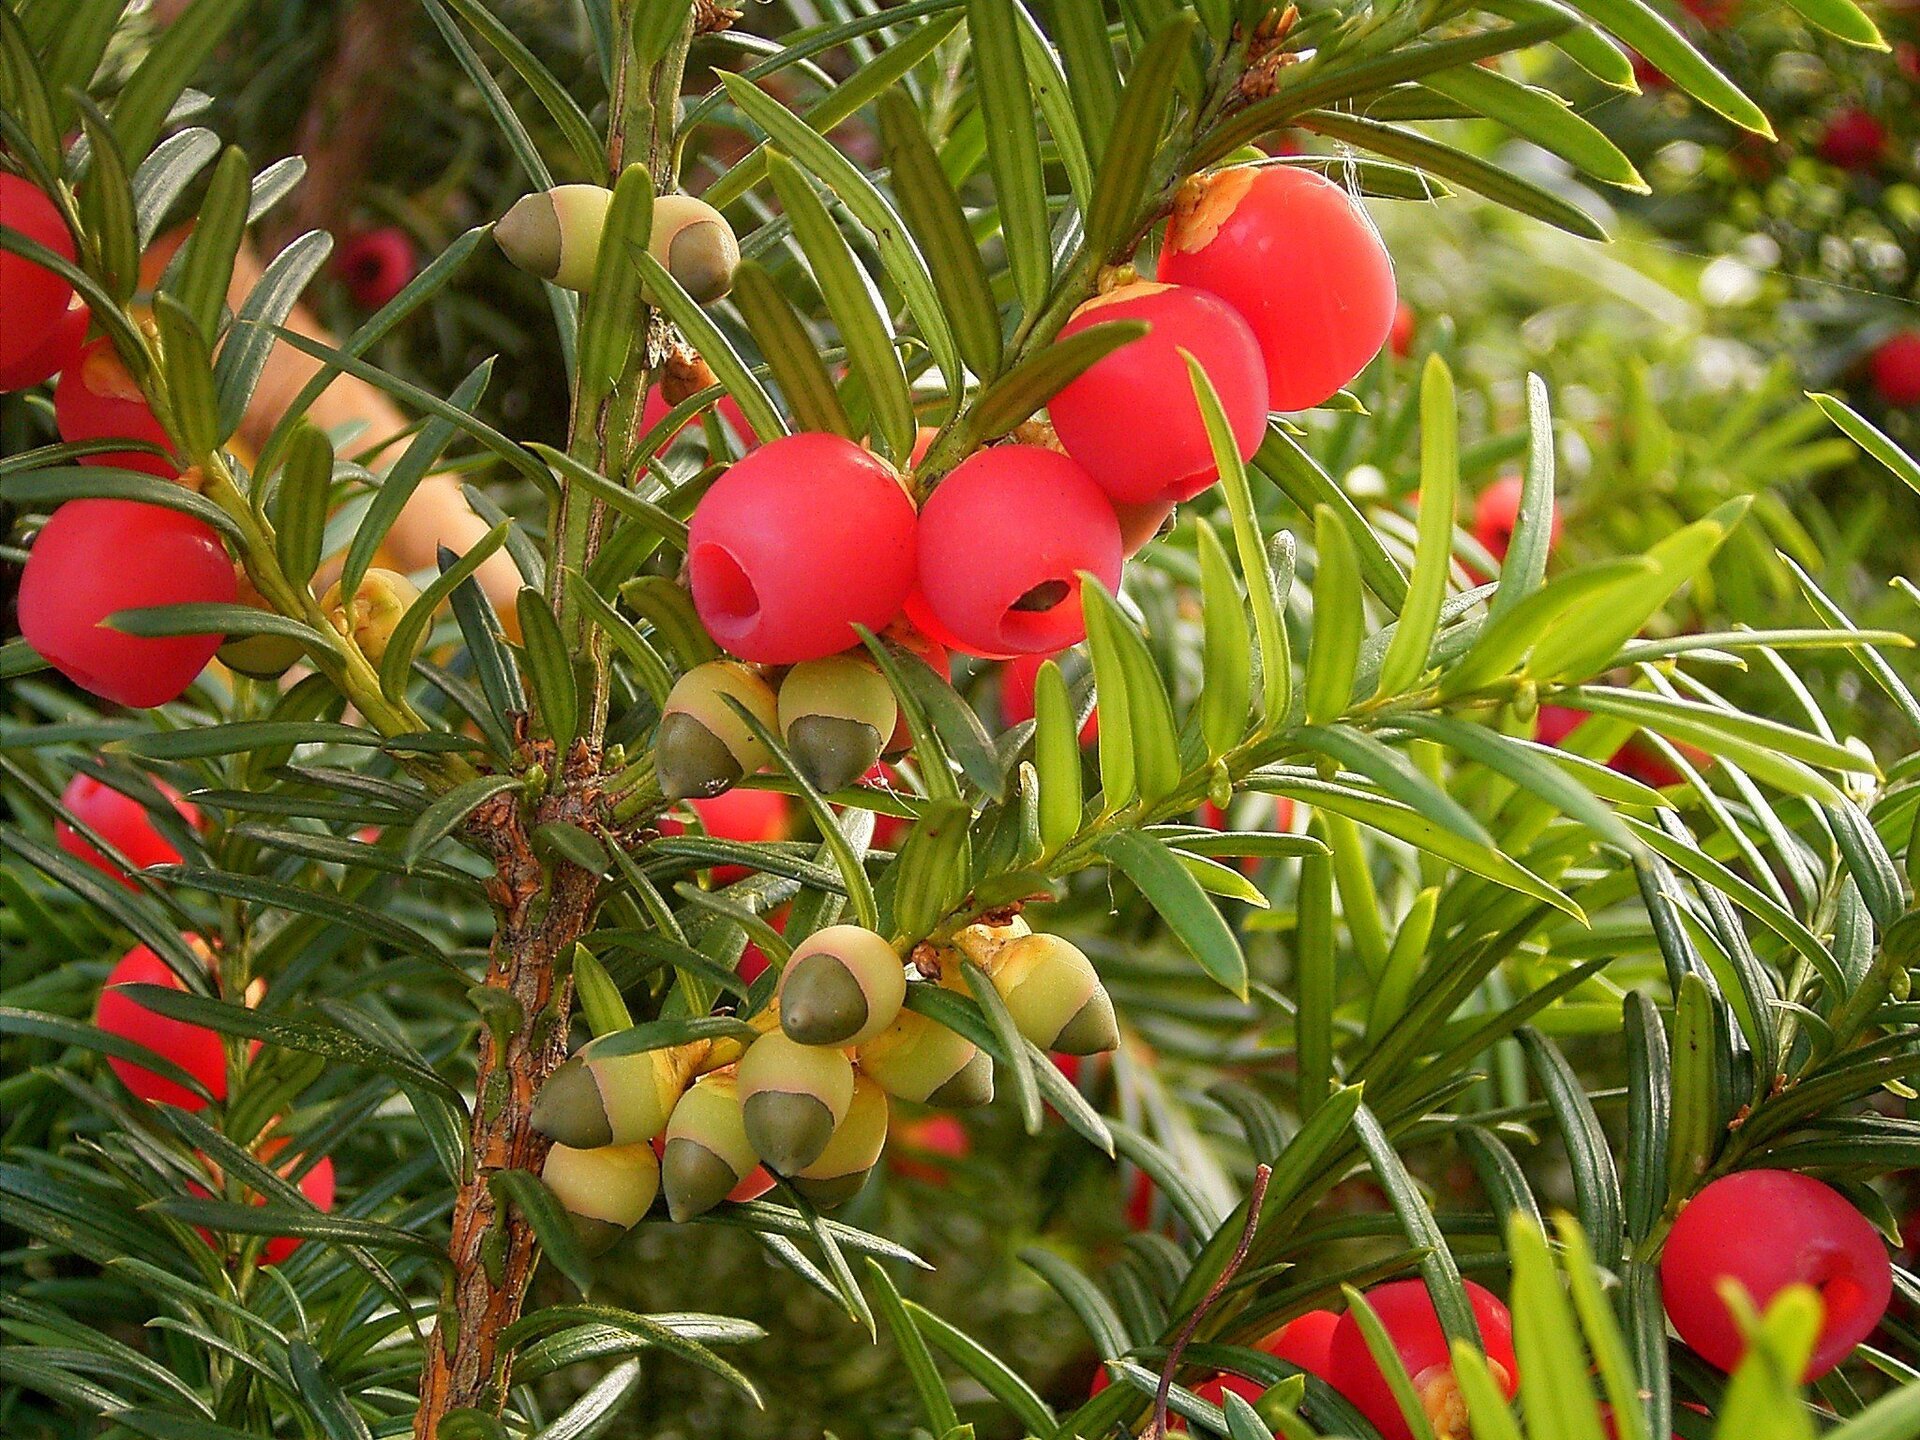 Galeria zdjęć prezentująca rośliny trujące. Pierwsze zdjęcie przedstawia czerwone szyszkojagody cisu.